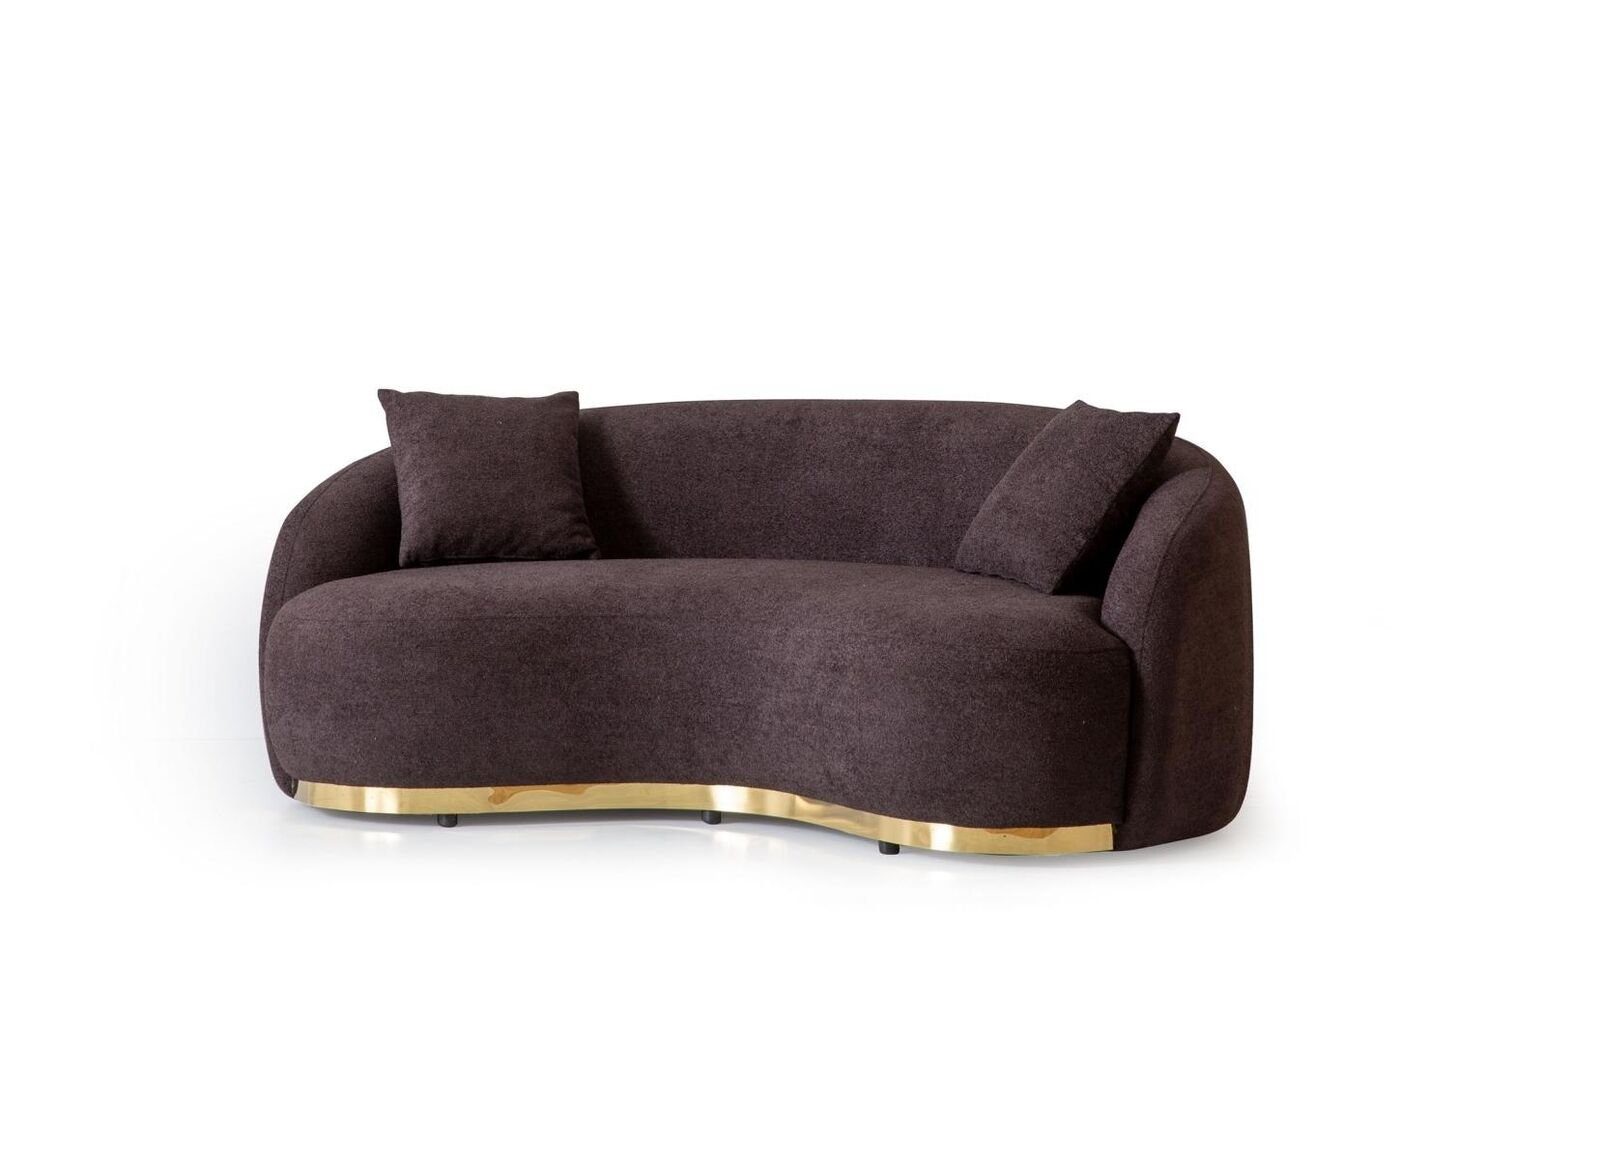 JVmoebel 3-Sitzer Luxus Sofa sitzer Europa Design 1 Textil 3 230cm, in weiche Sofa Braun - Made Teile, Polster